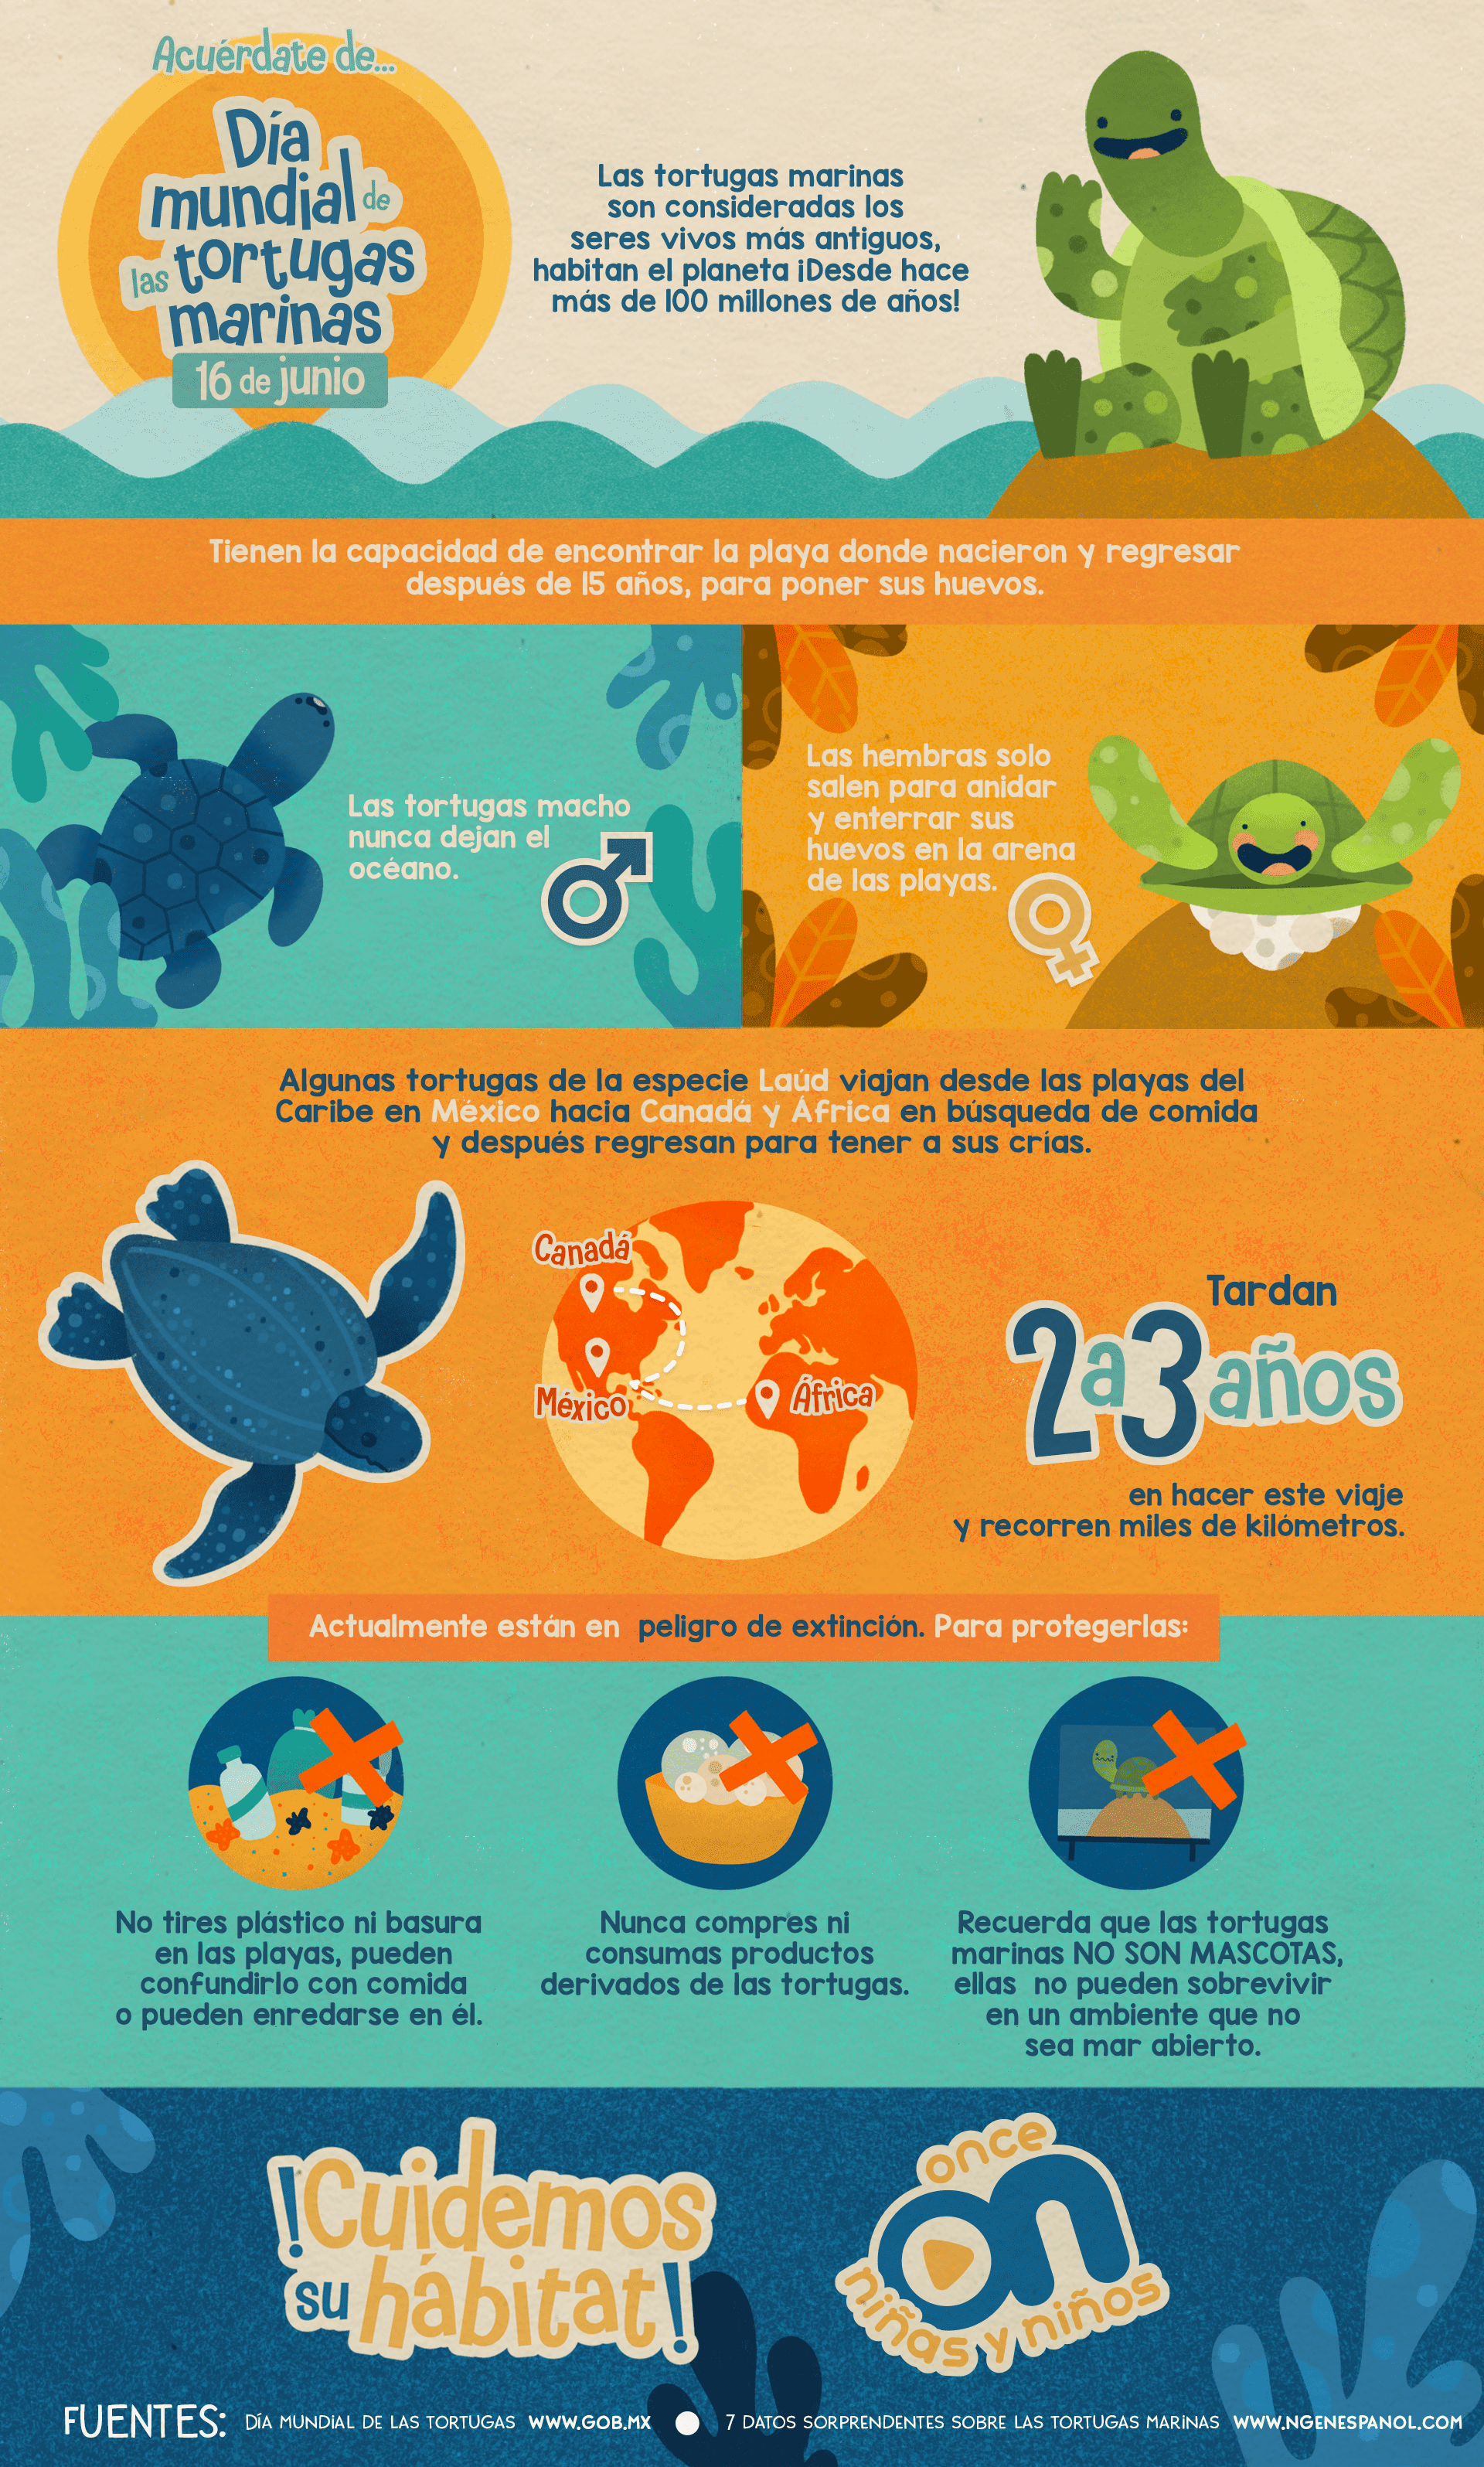 Acuérdate de...
Día Mundial de las tortugas marinas
16 de junio 
Once Niñas y Niños 